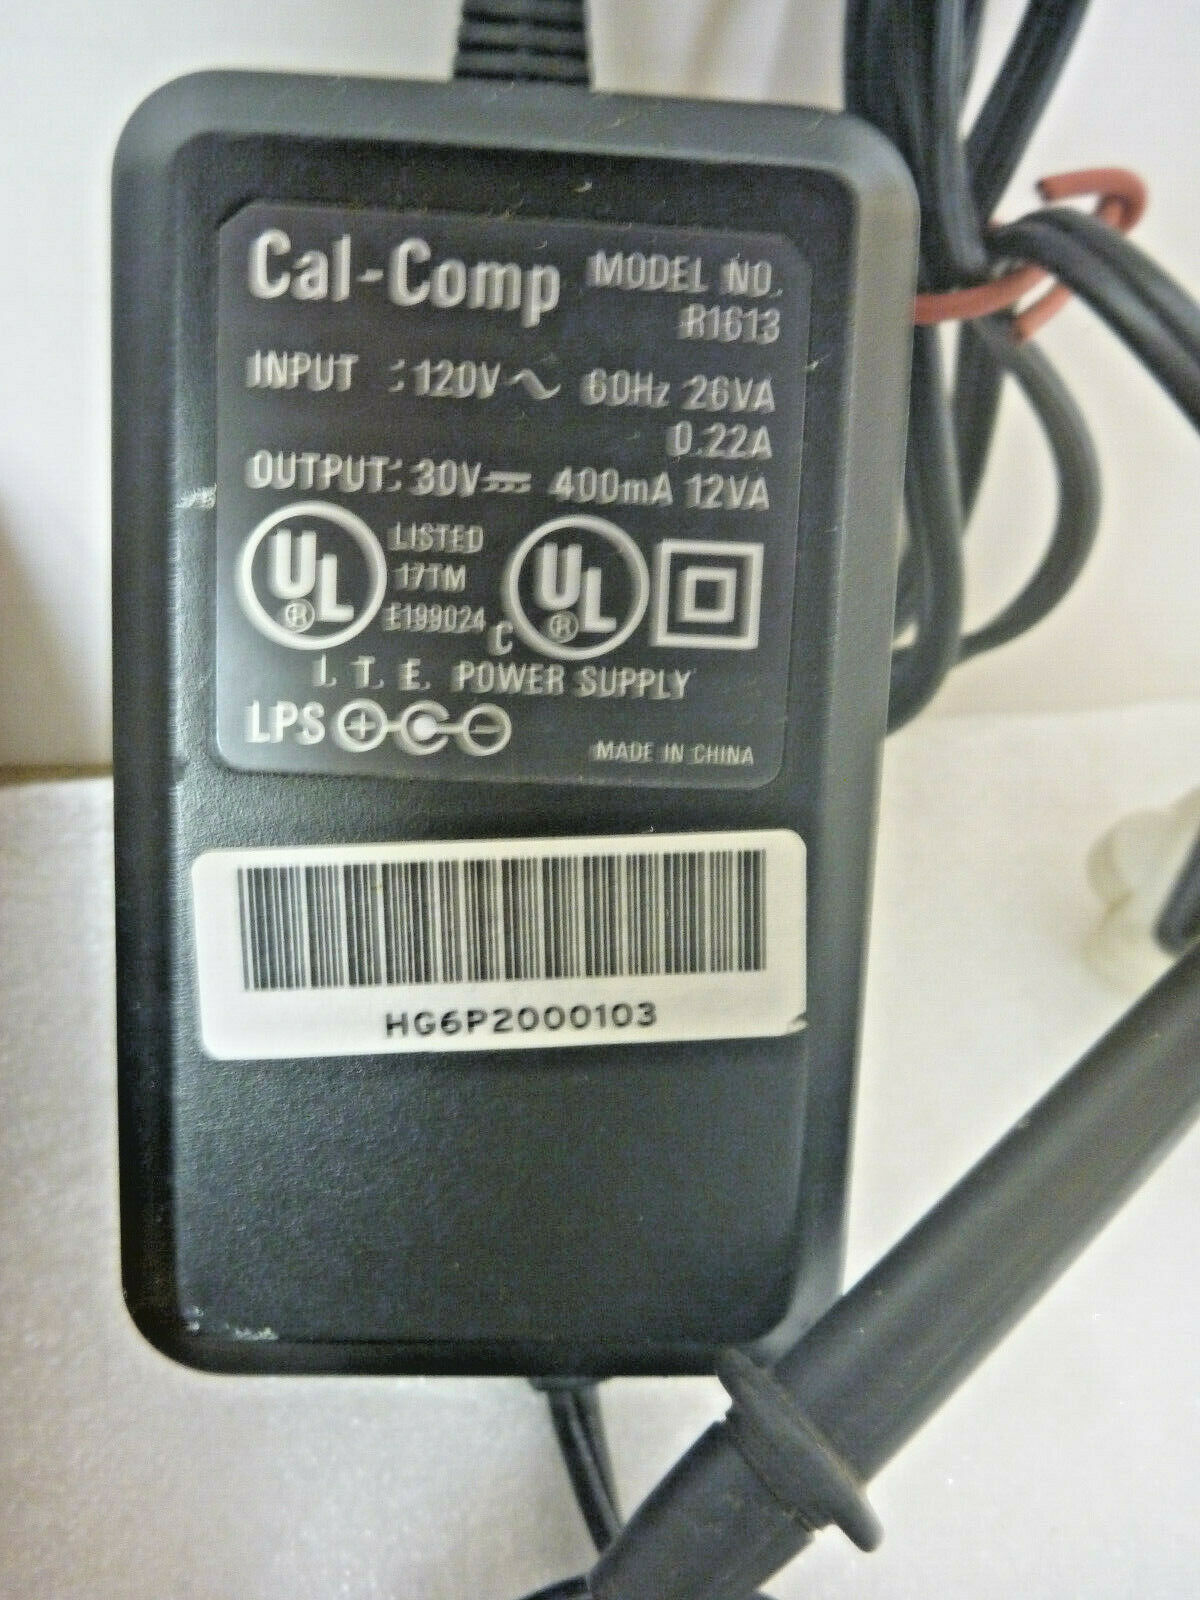 NEW Cal-Comp R1613 ITE Power Supply AC Adapter DC 30V 400mA 12VA - Click Image to Close